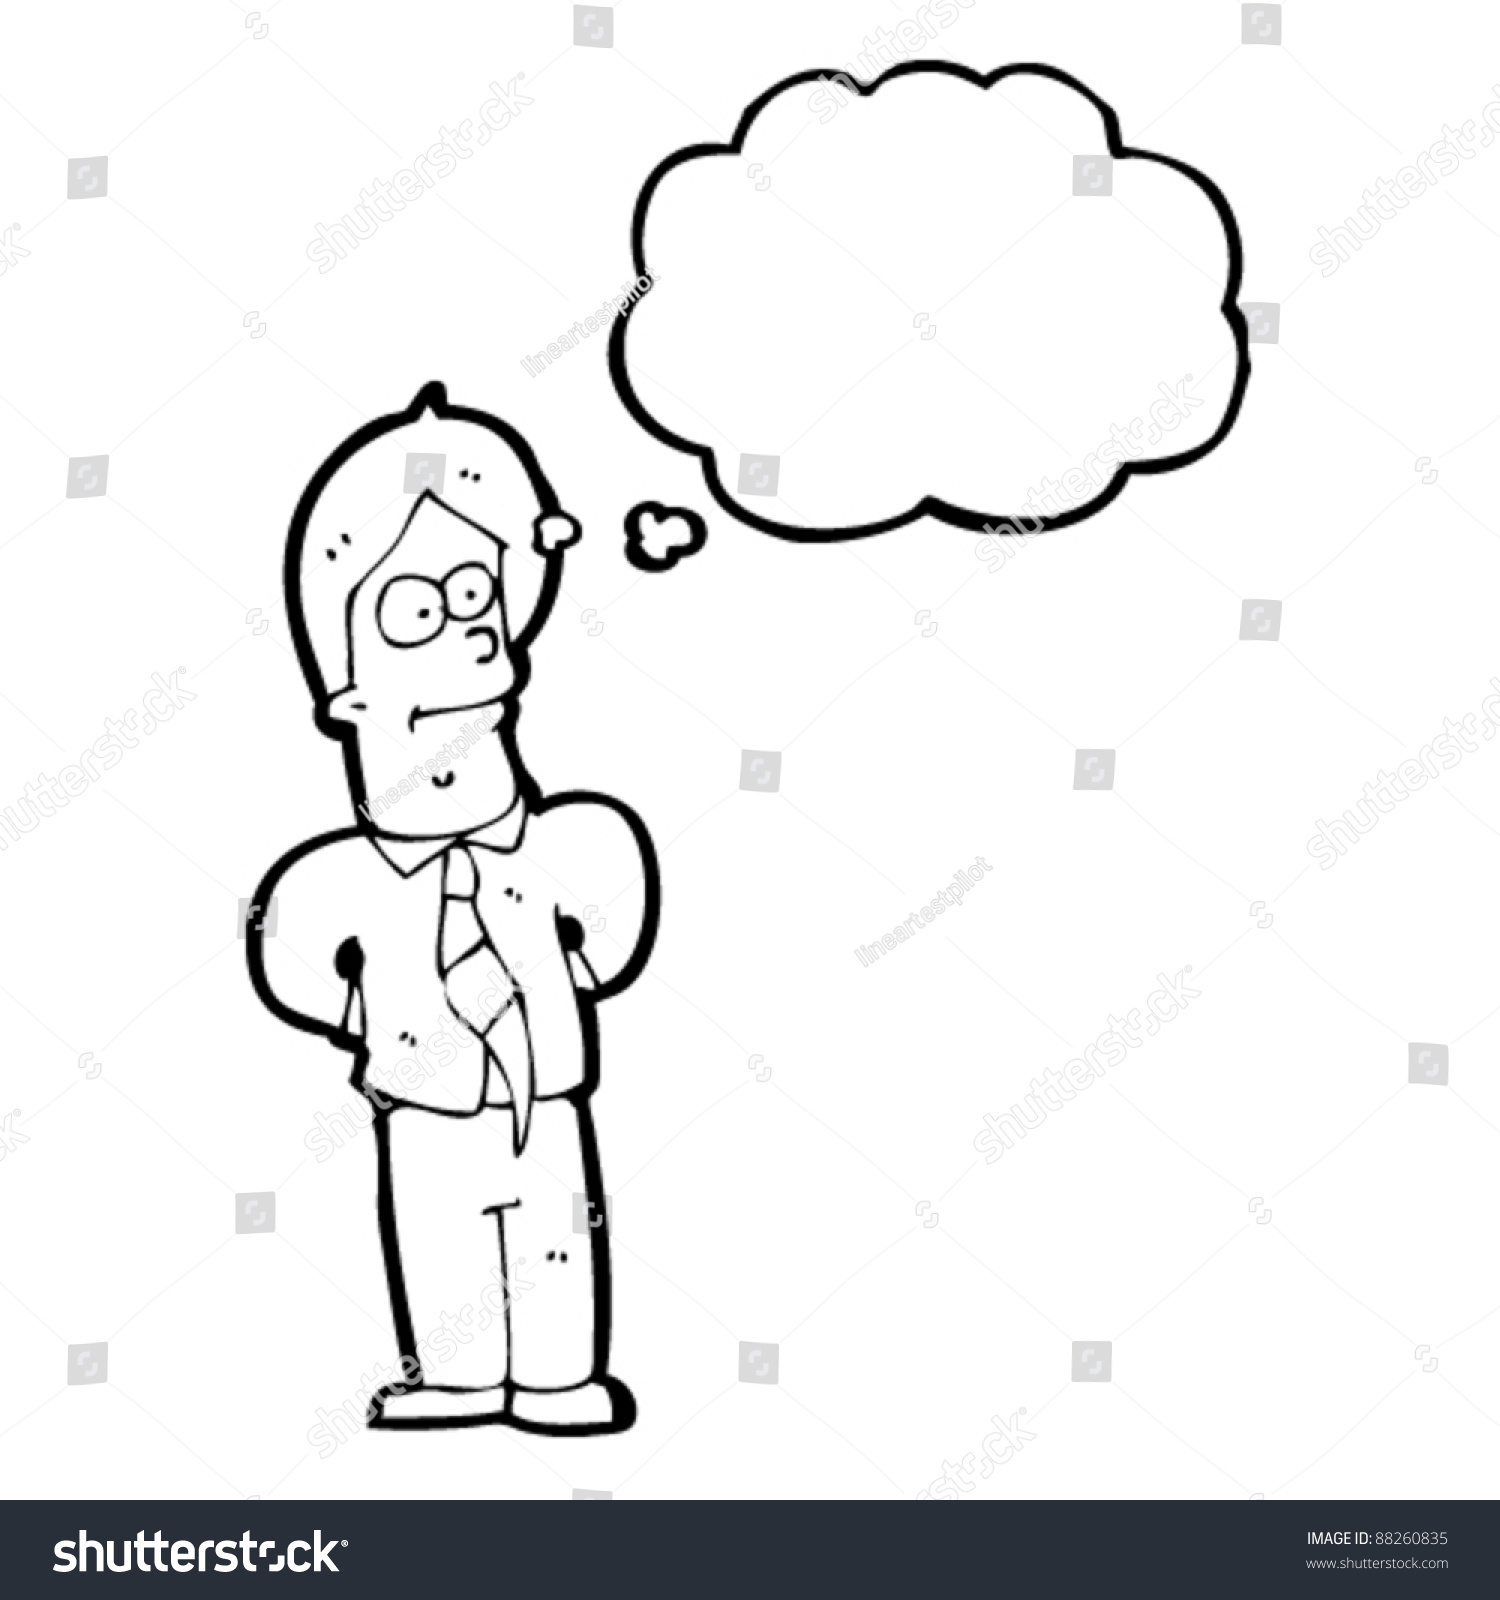 Man Thinking Cartoon Stock Vector Illustration 88260835 : Shutterstock